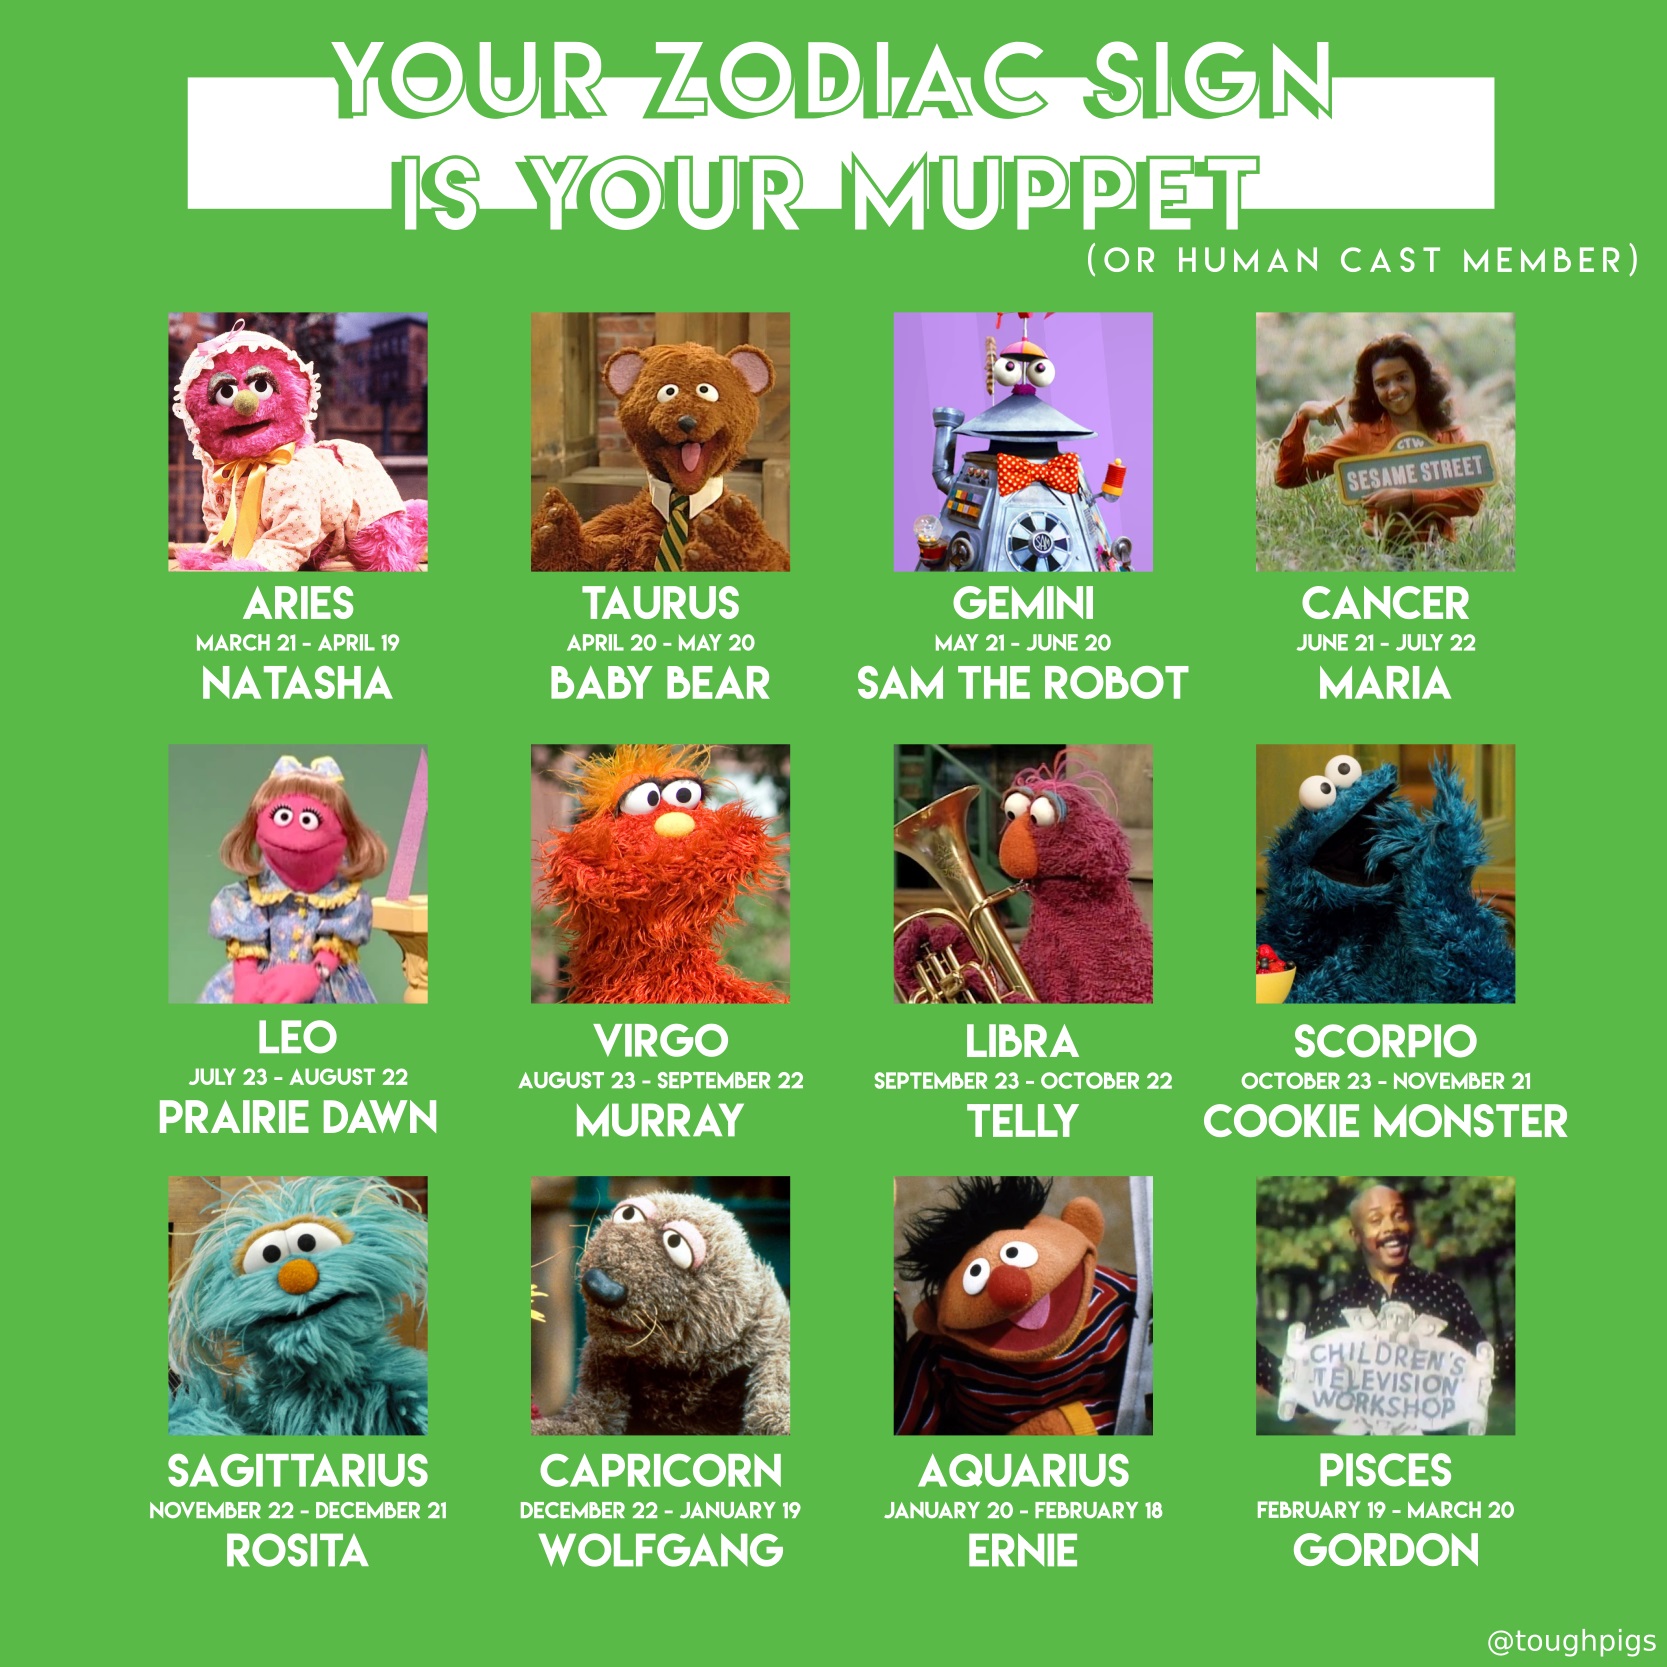 Finally, the TRUE Sesame Street Zodiac